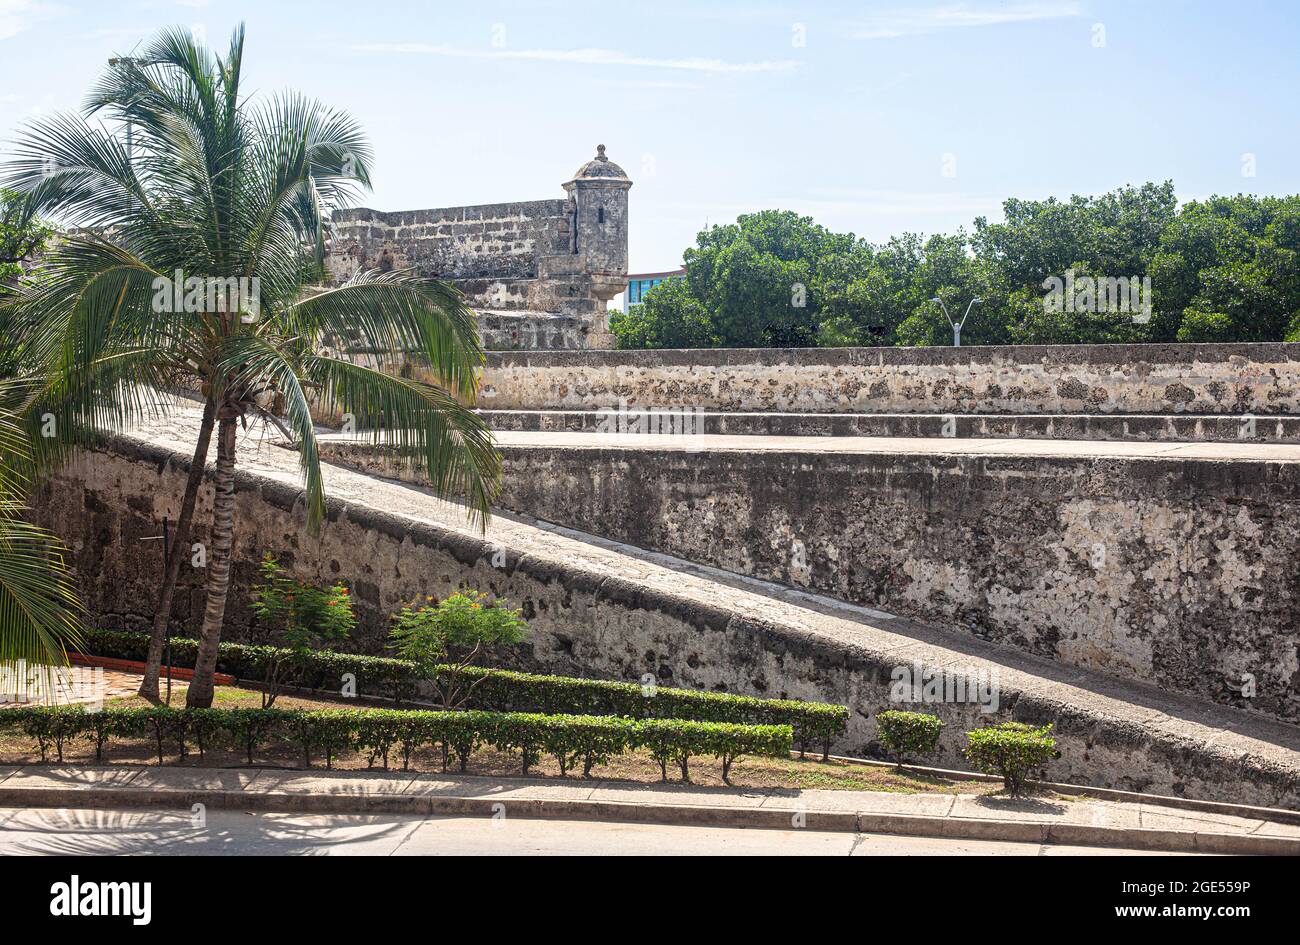 Access ramp to Baluarte San Lucas, Cartagena de Indias, Colombia. Stock Photo